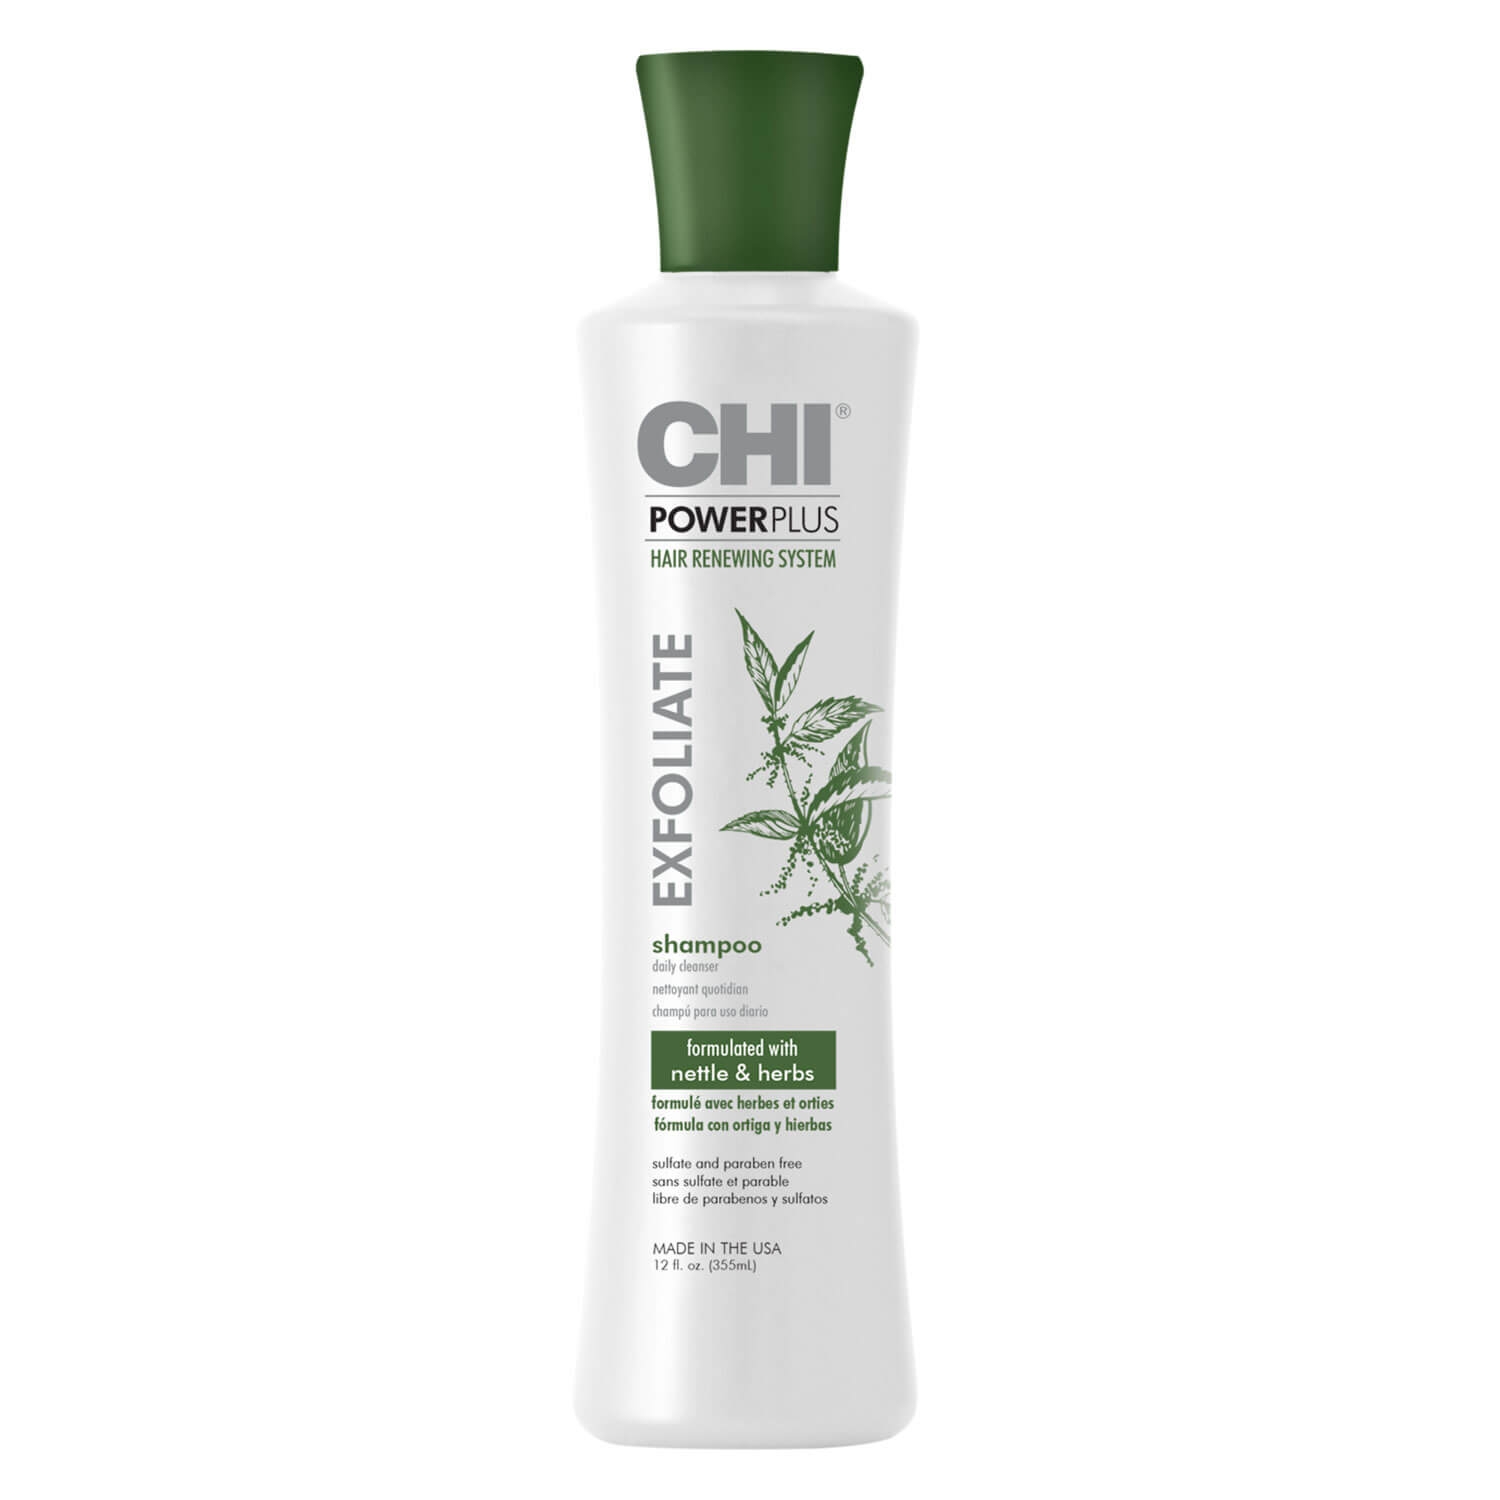 Produktbild von CHI PowerPlus - Exfoliate Shampoo